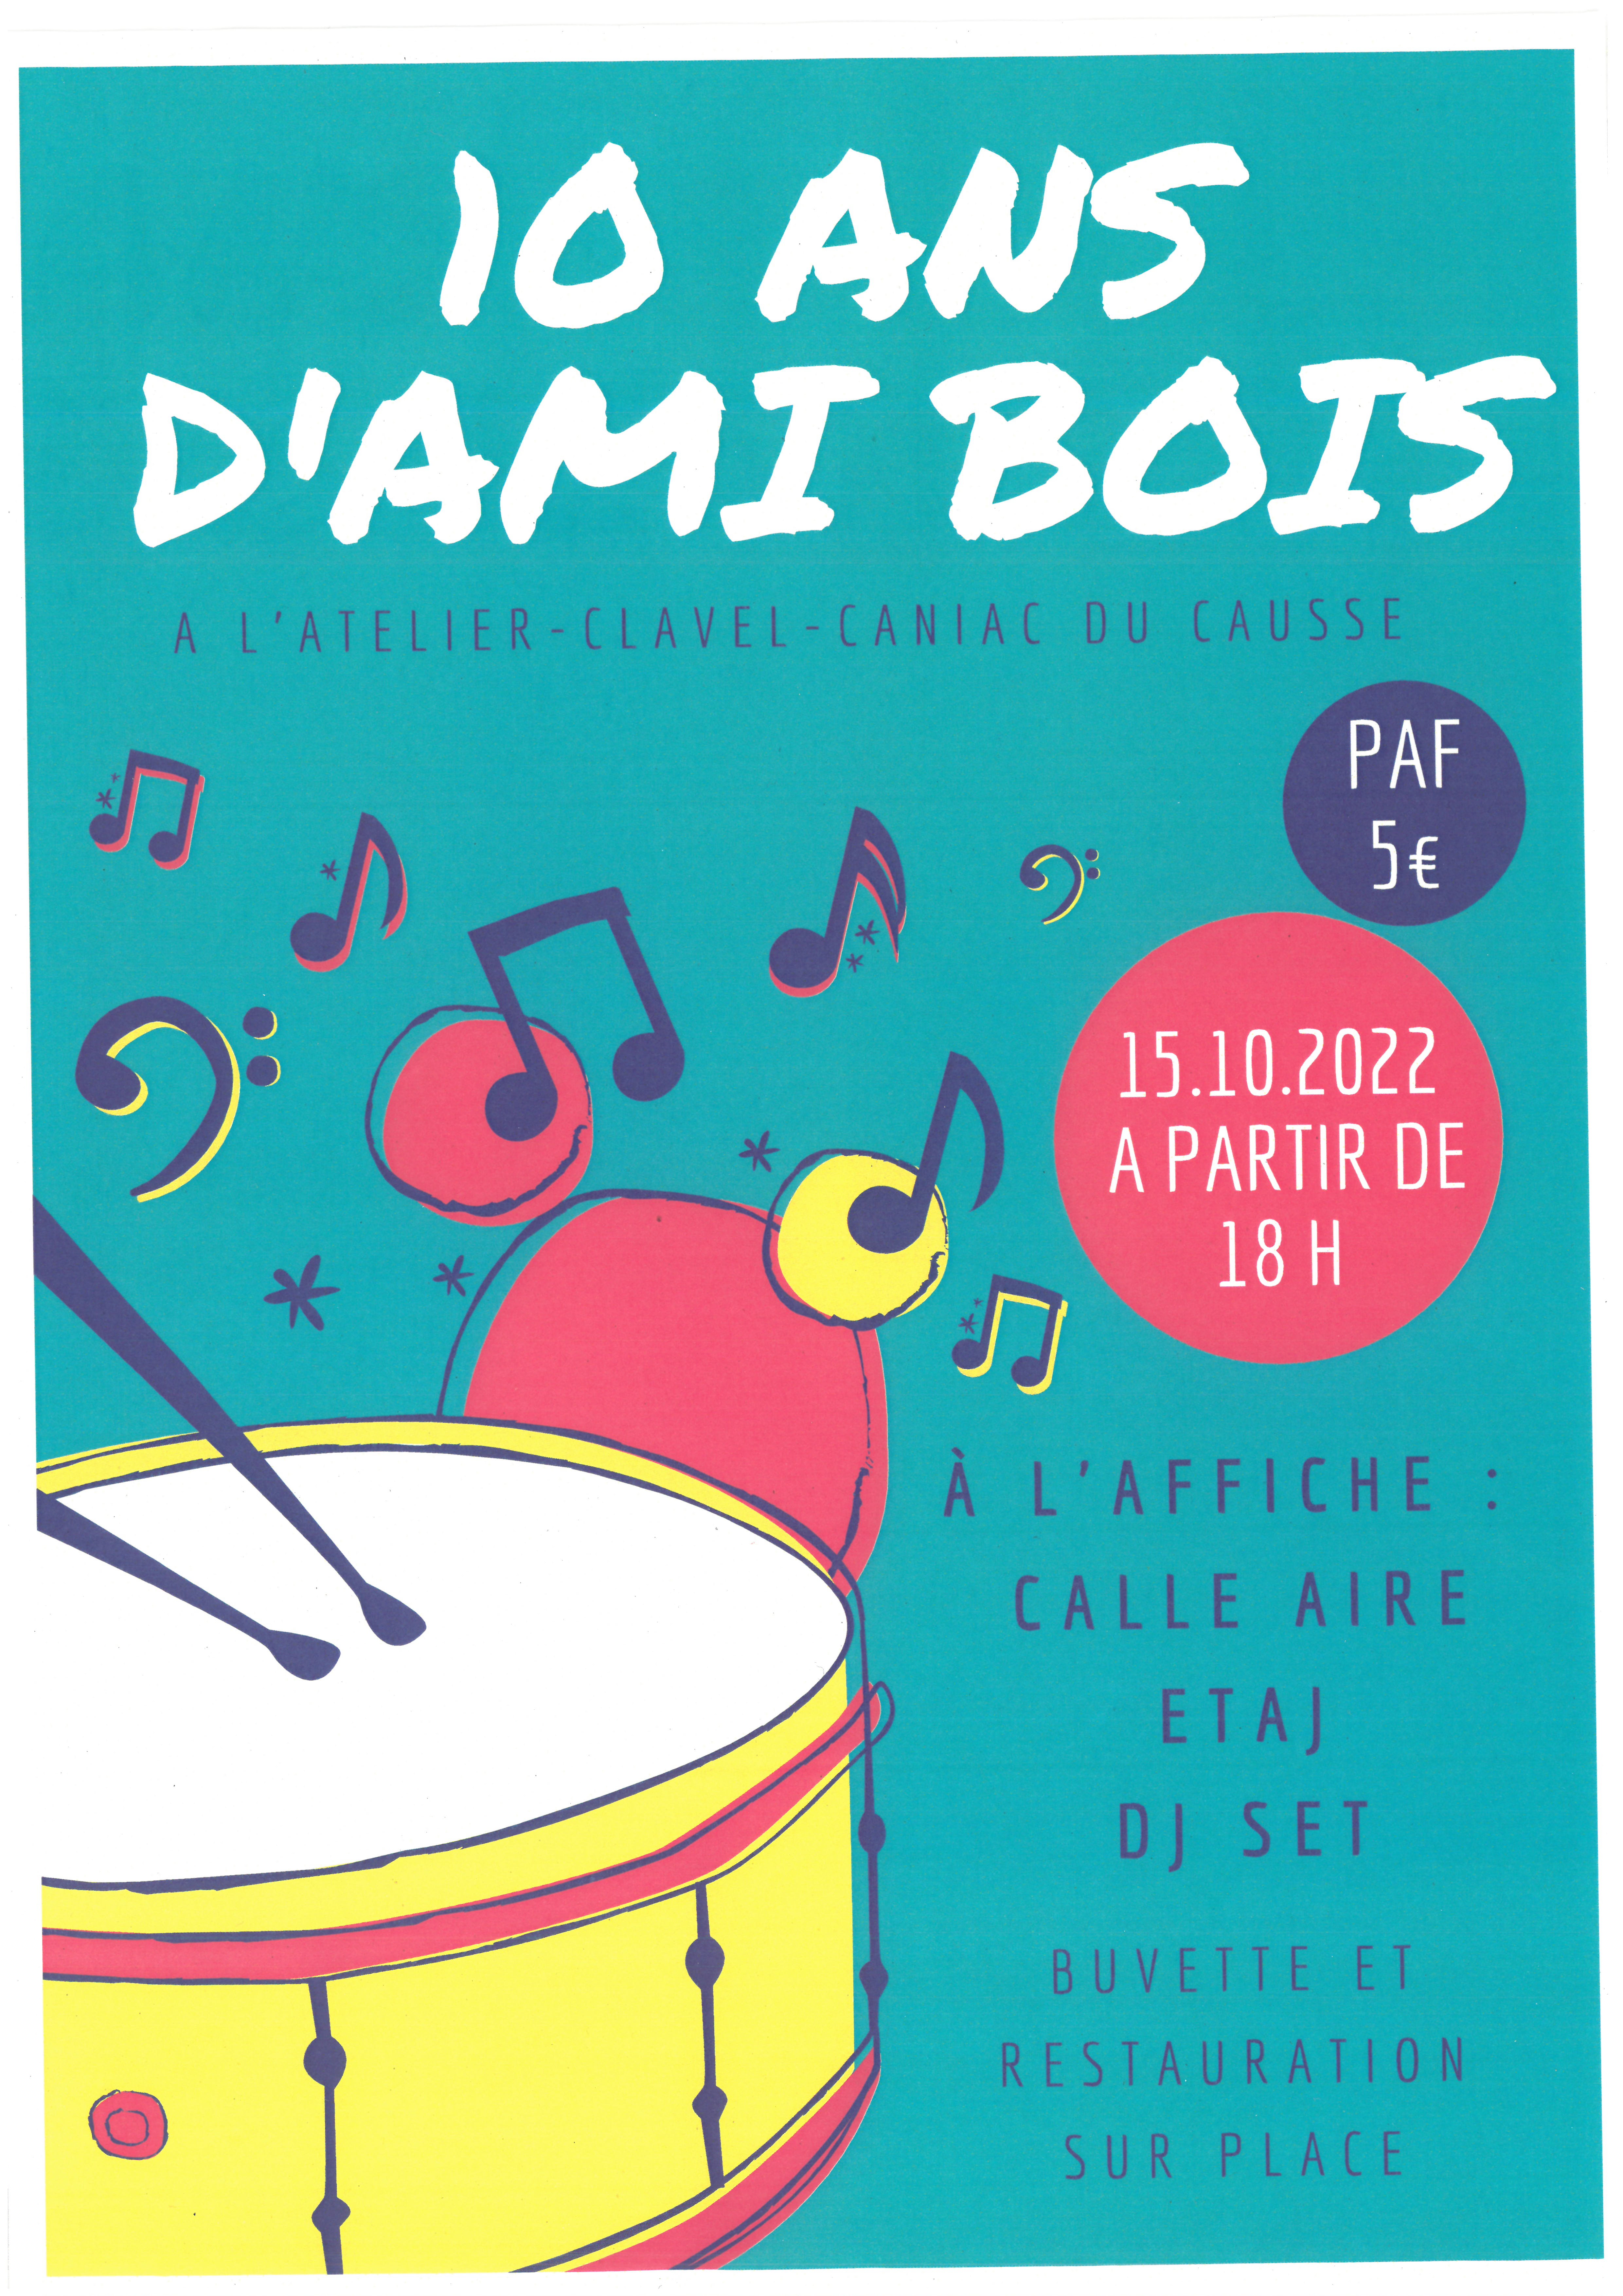 Figeac : Soirée Concert des 10 ans d'Ami Bois